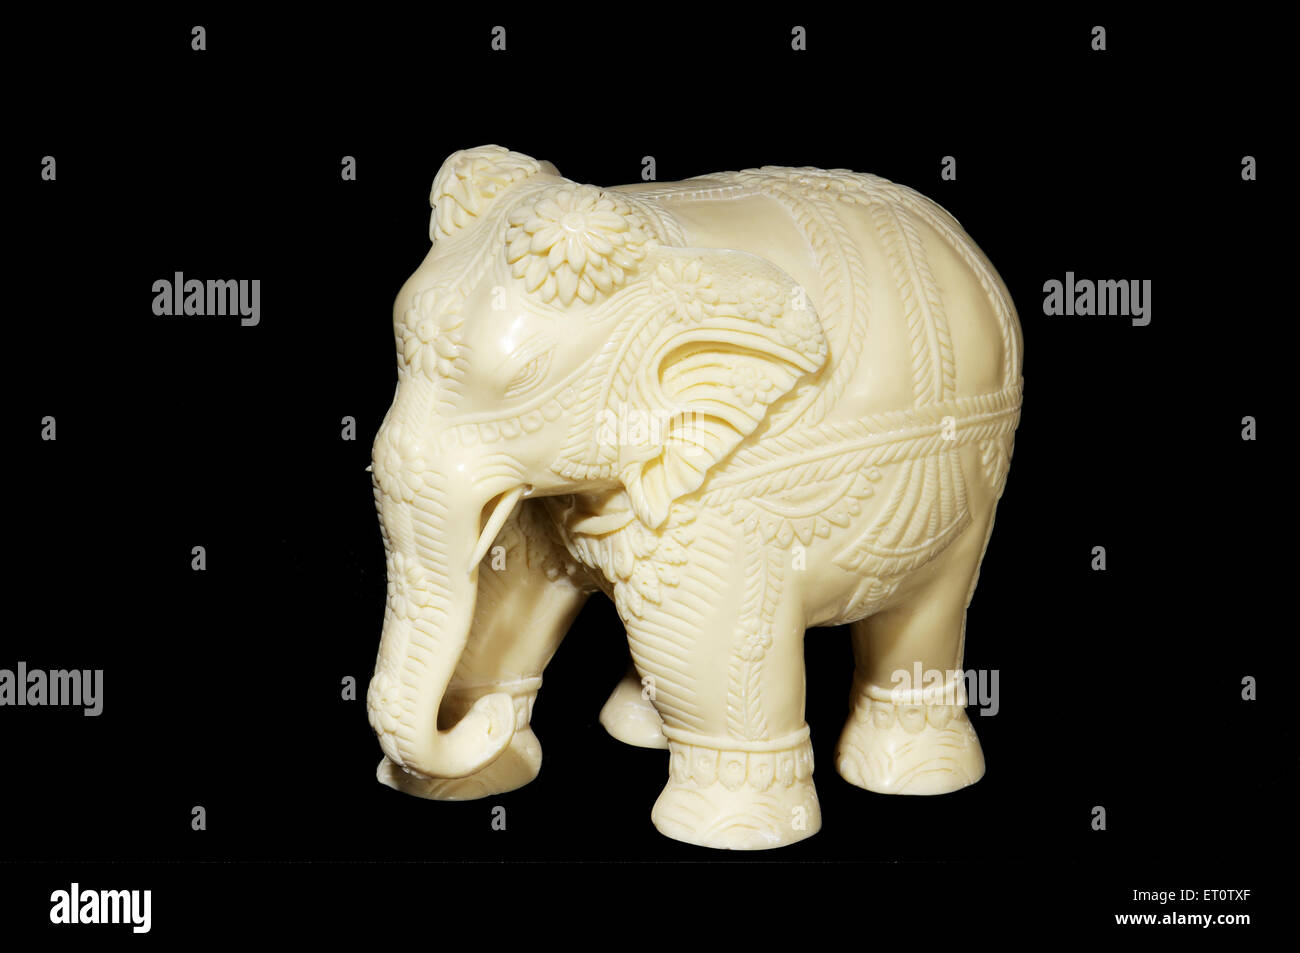 Elephant handicraft from elephants tusk on black background Stock Photo